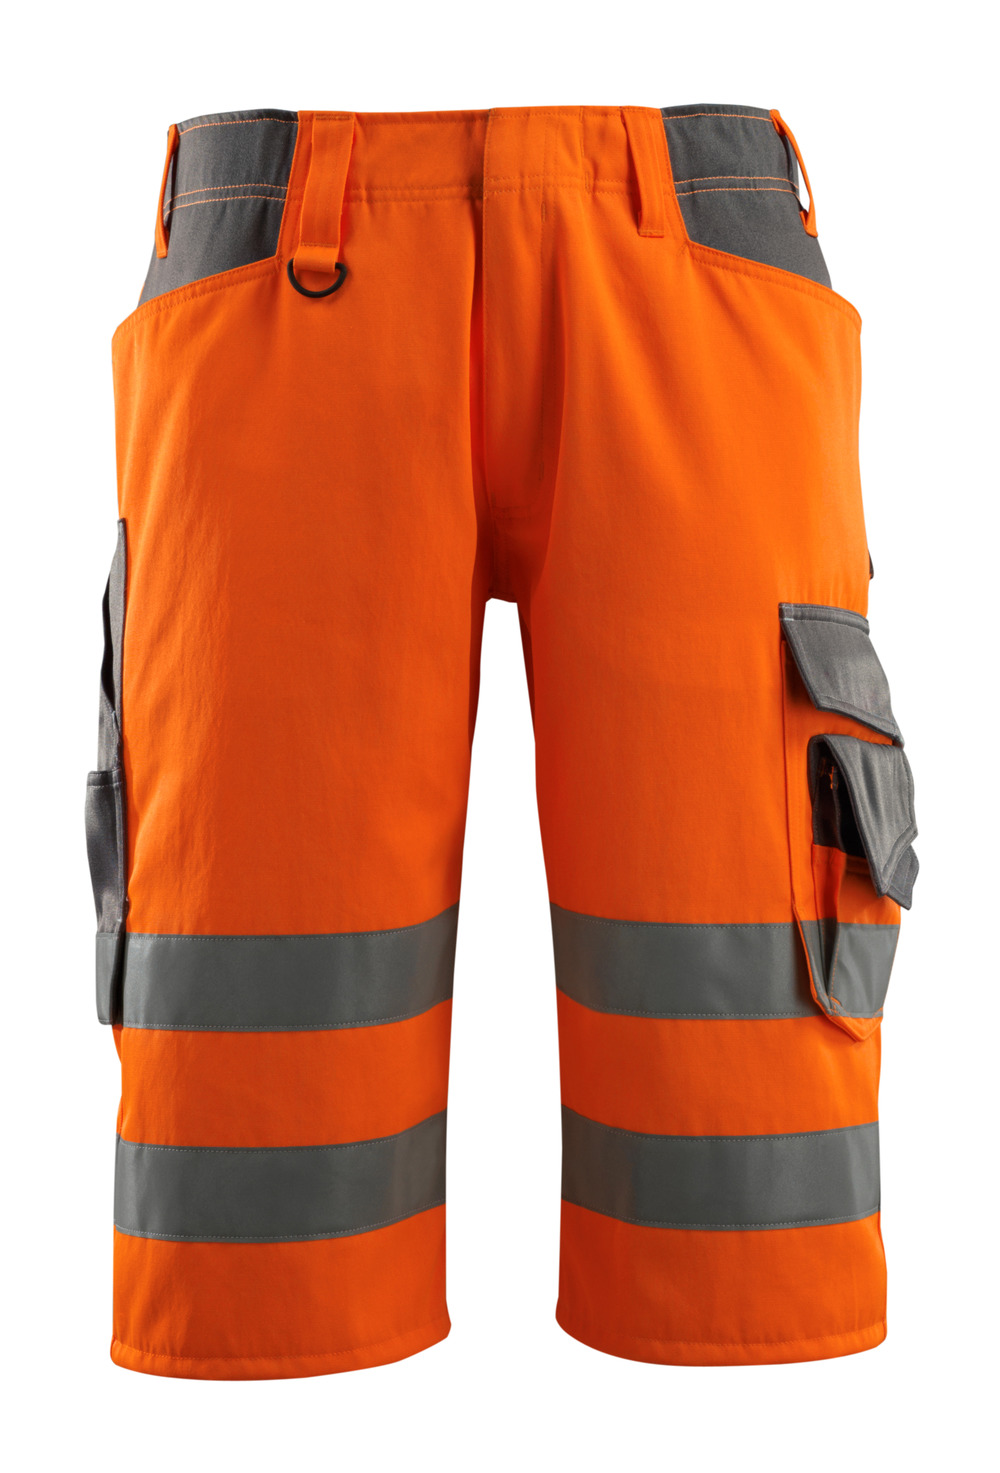 MASCOT-Warnschutz, Warn-Shorts, Luton,  290 g/m², orange/dunkelanthrazit

